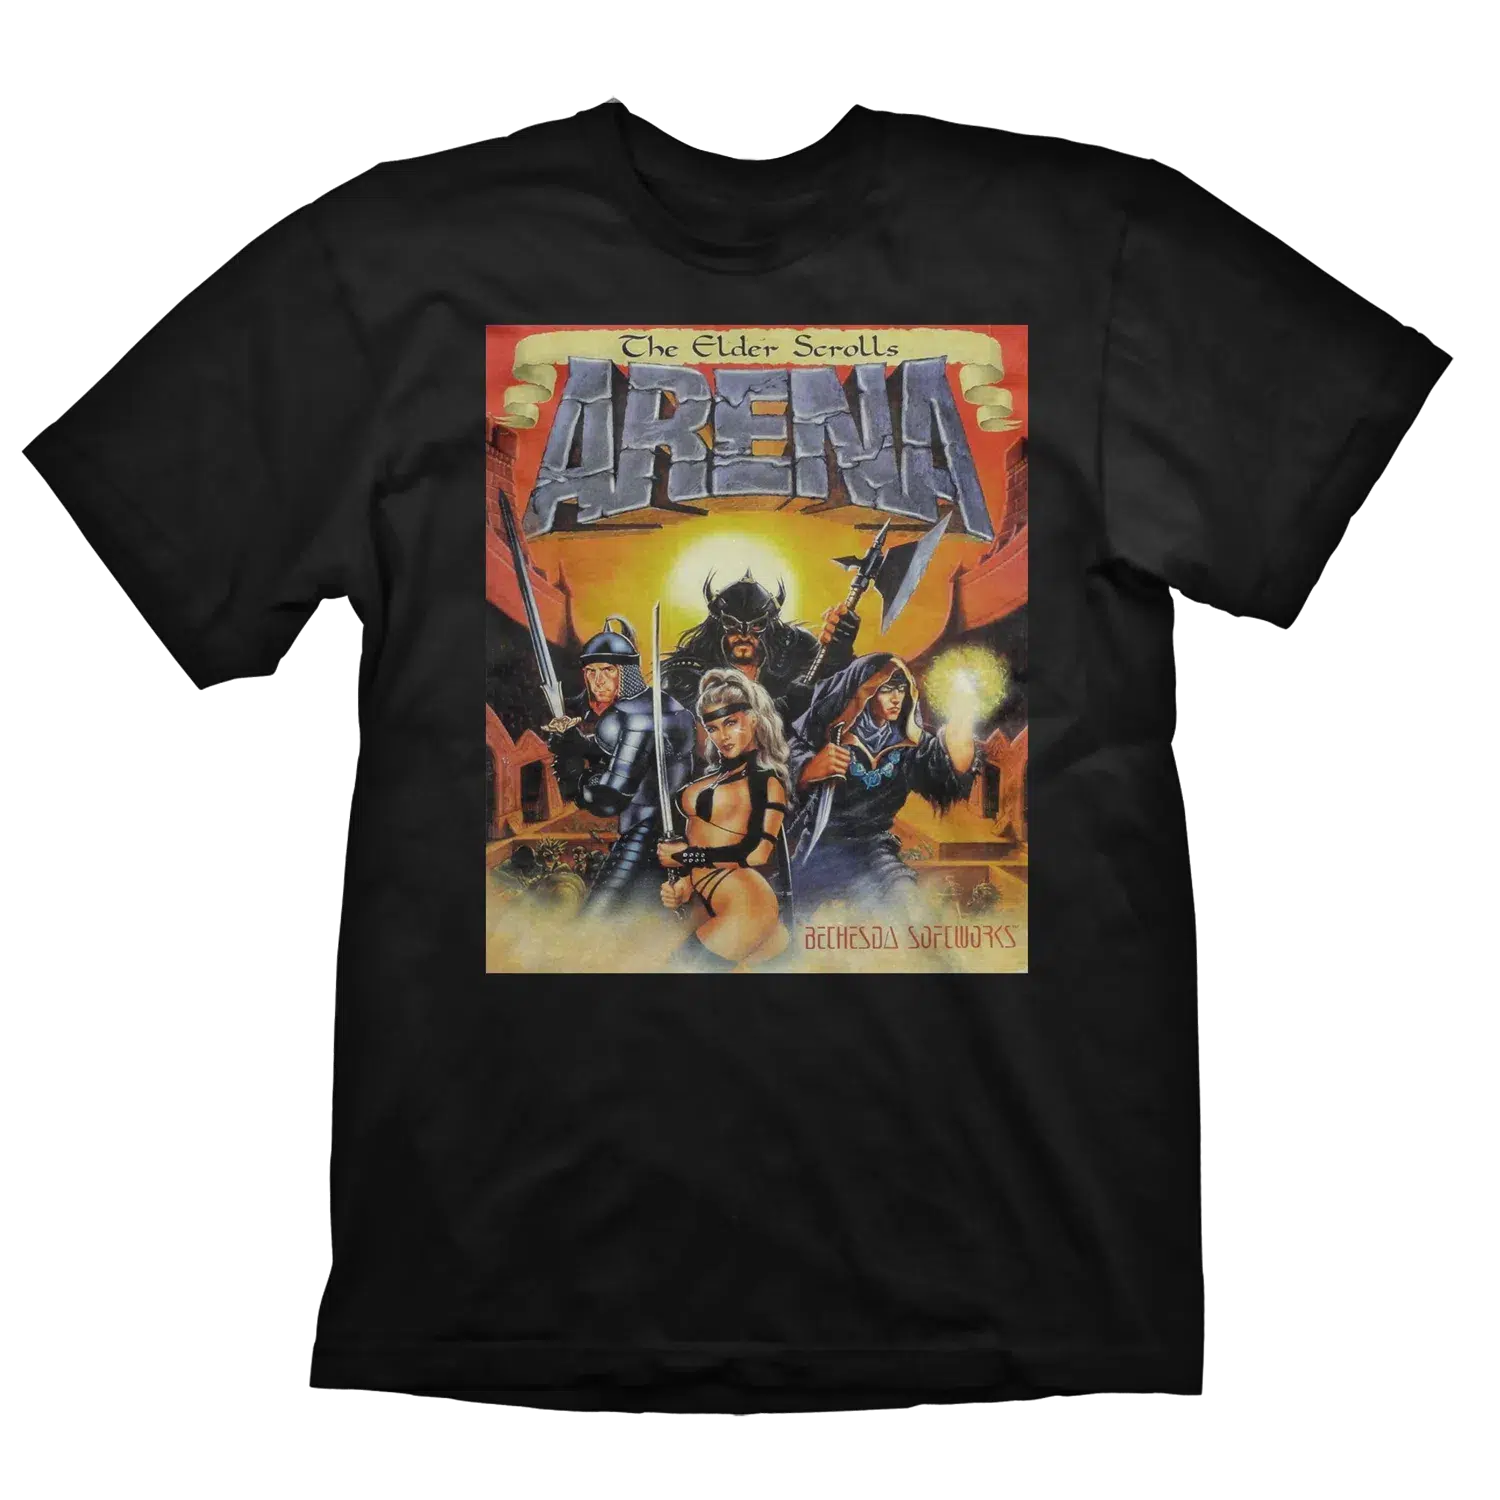 The Elder Scrolls T-Shirt Vintage Arena L Cover